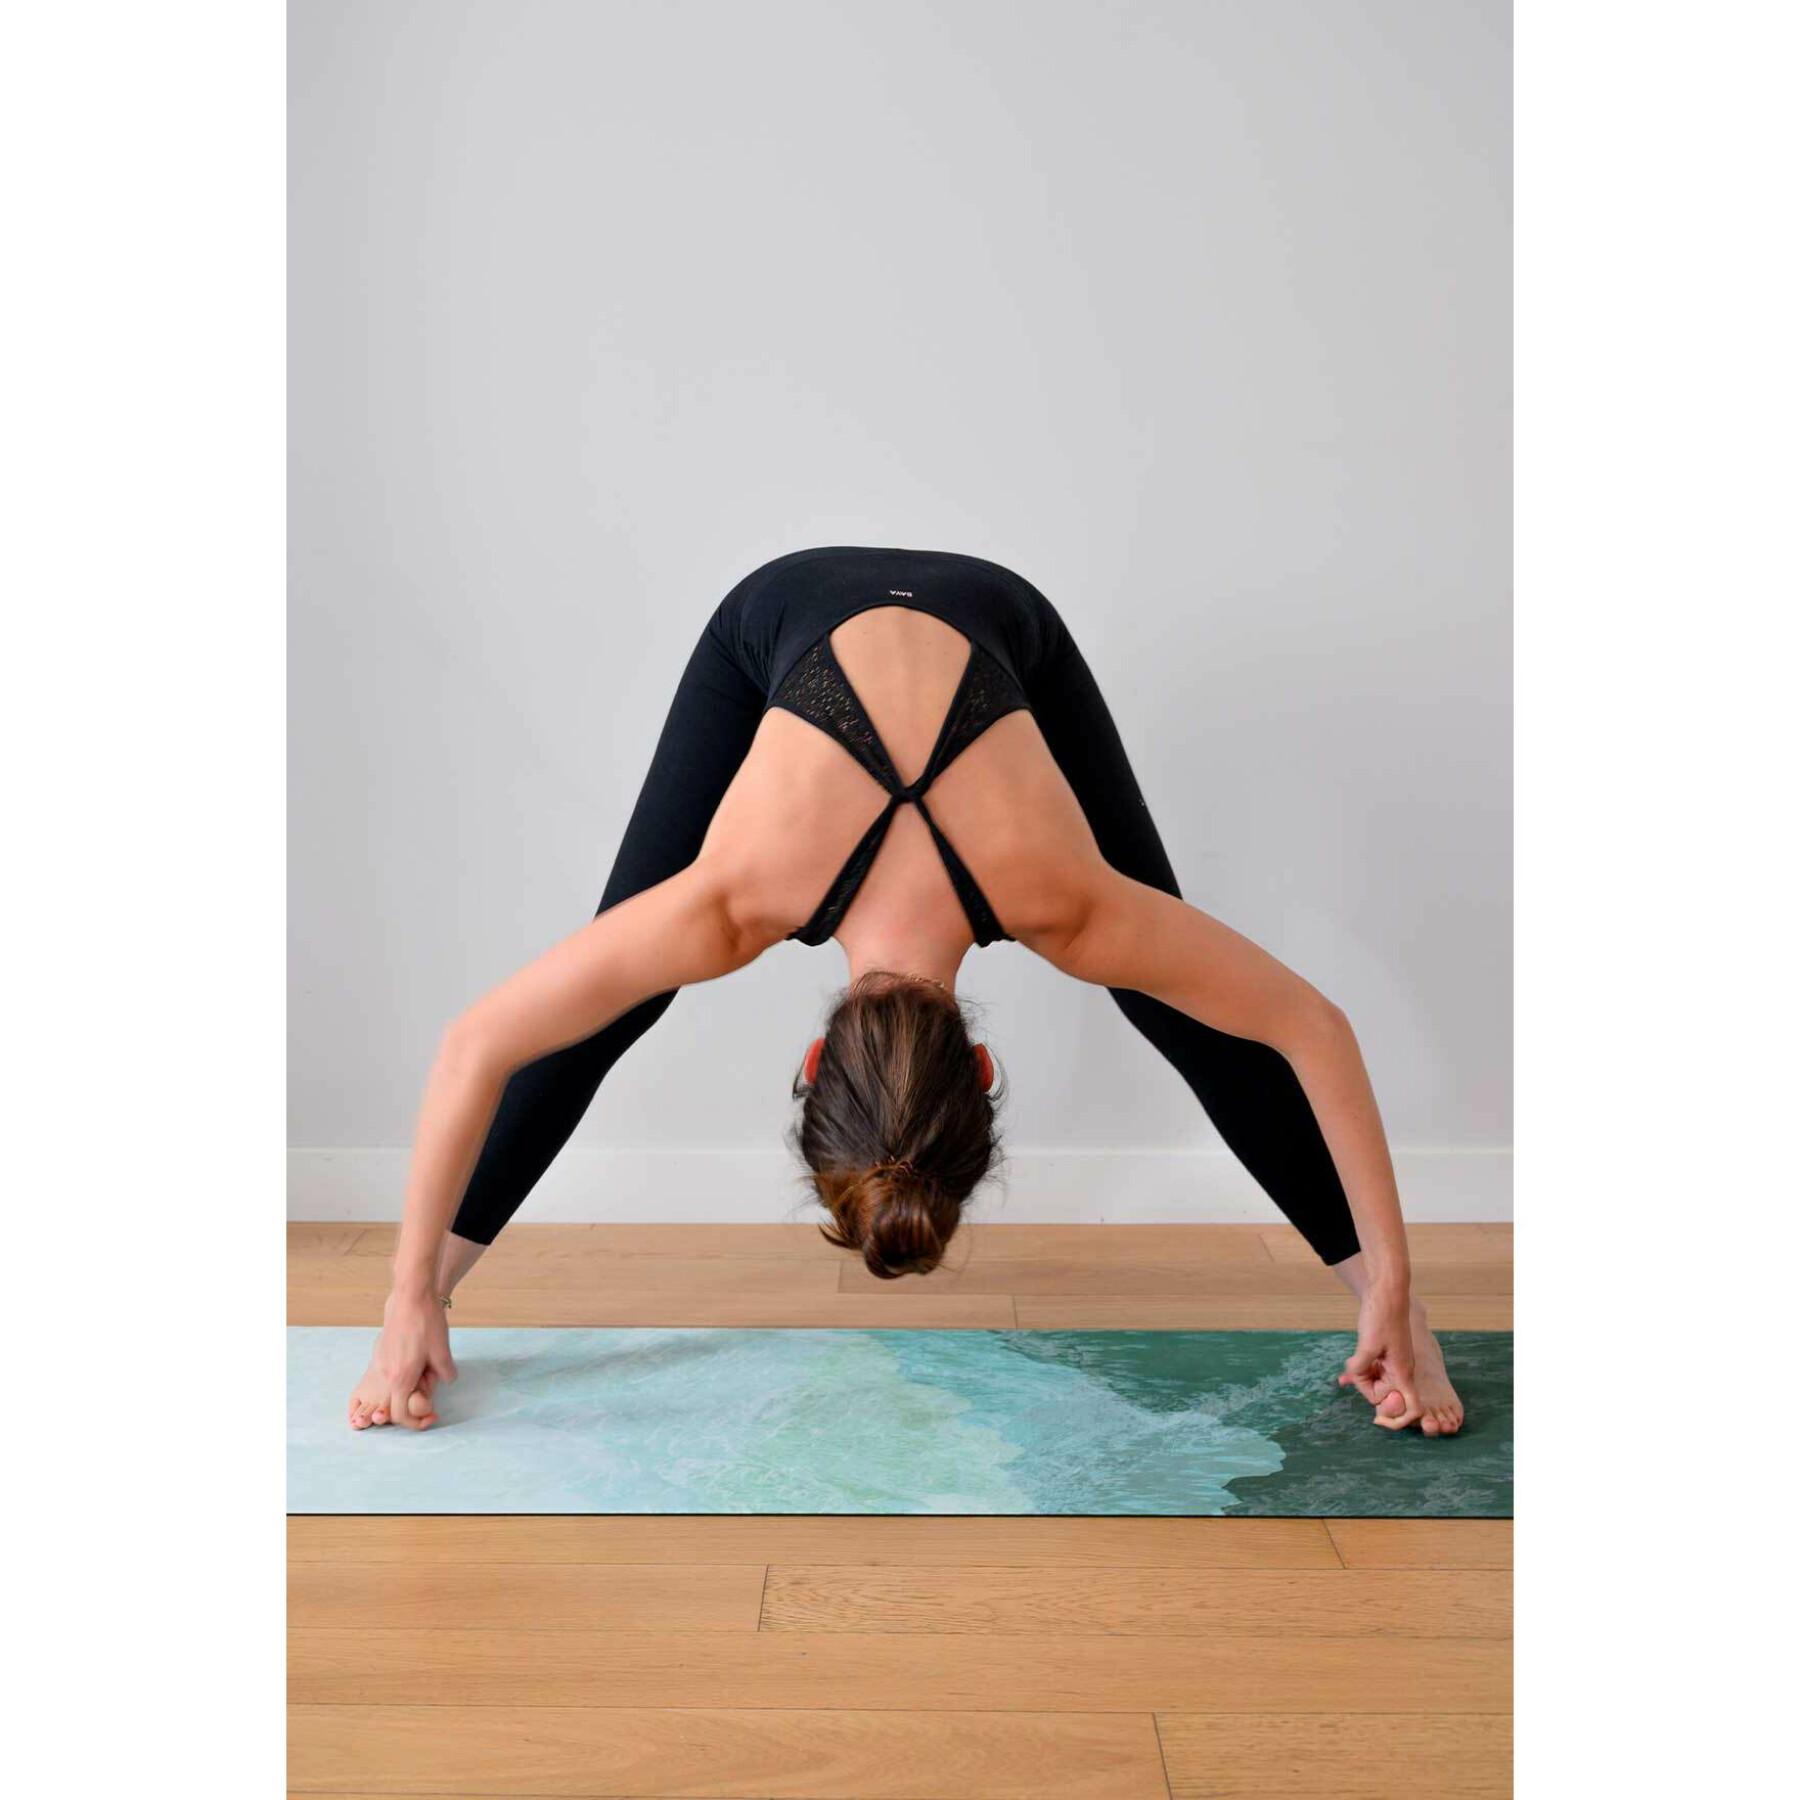 Dywaniki podłogowe Boya Yoga INTENSE® Classic - 3 mm Alpnach